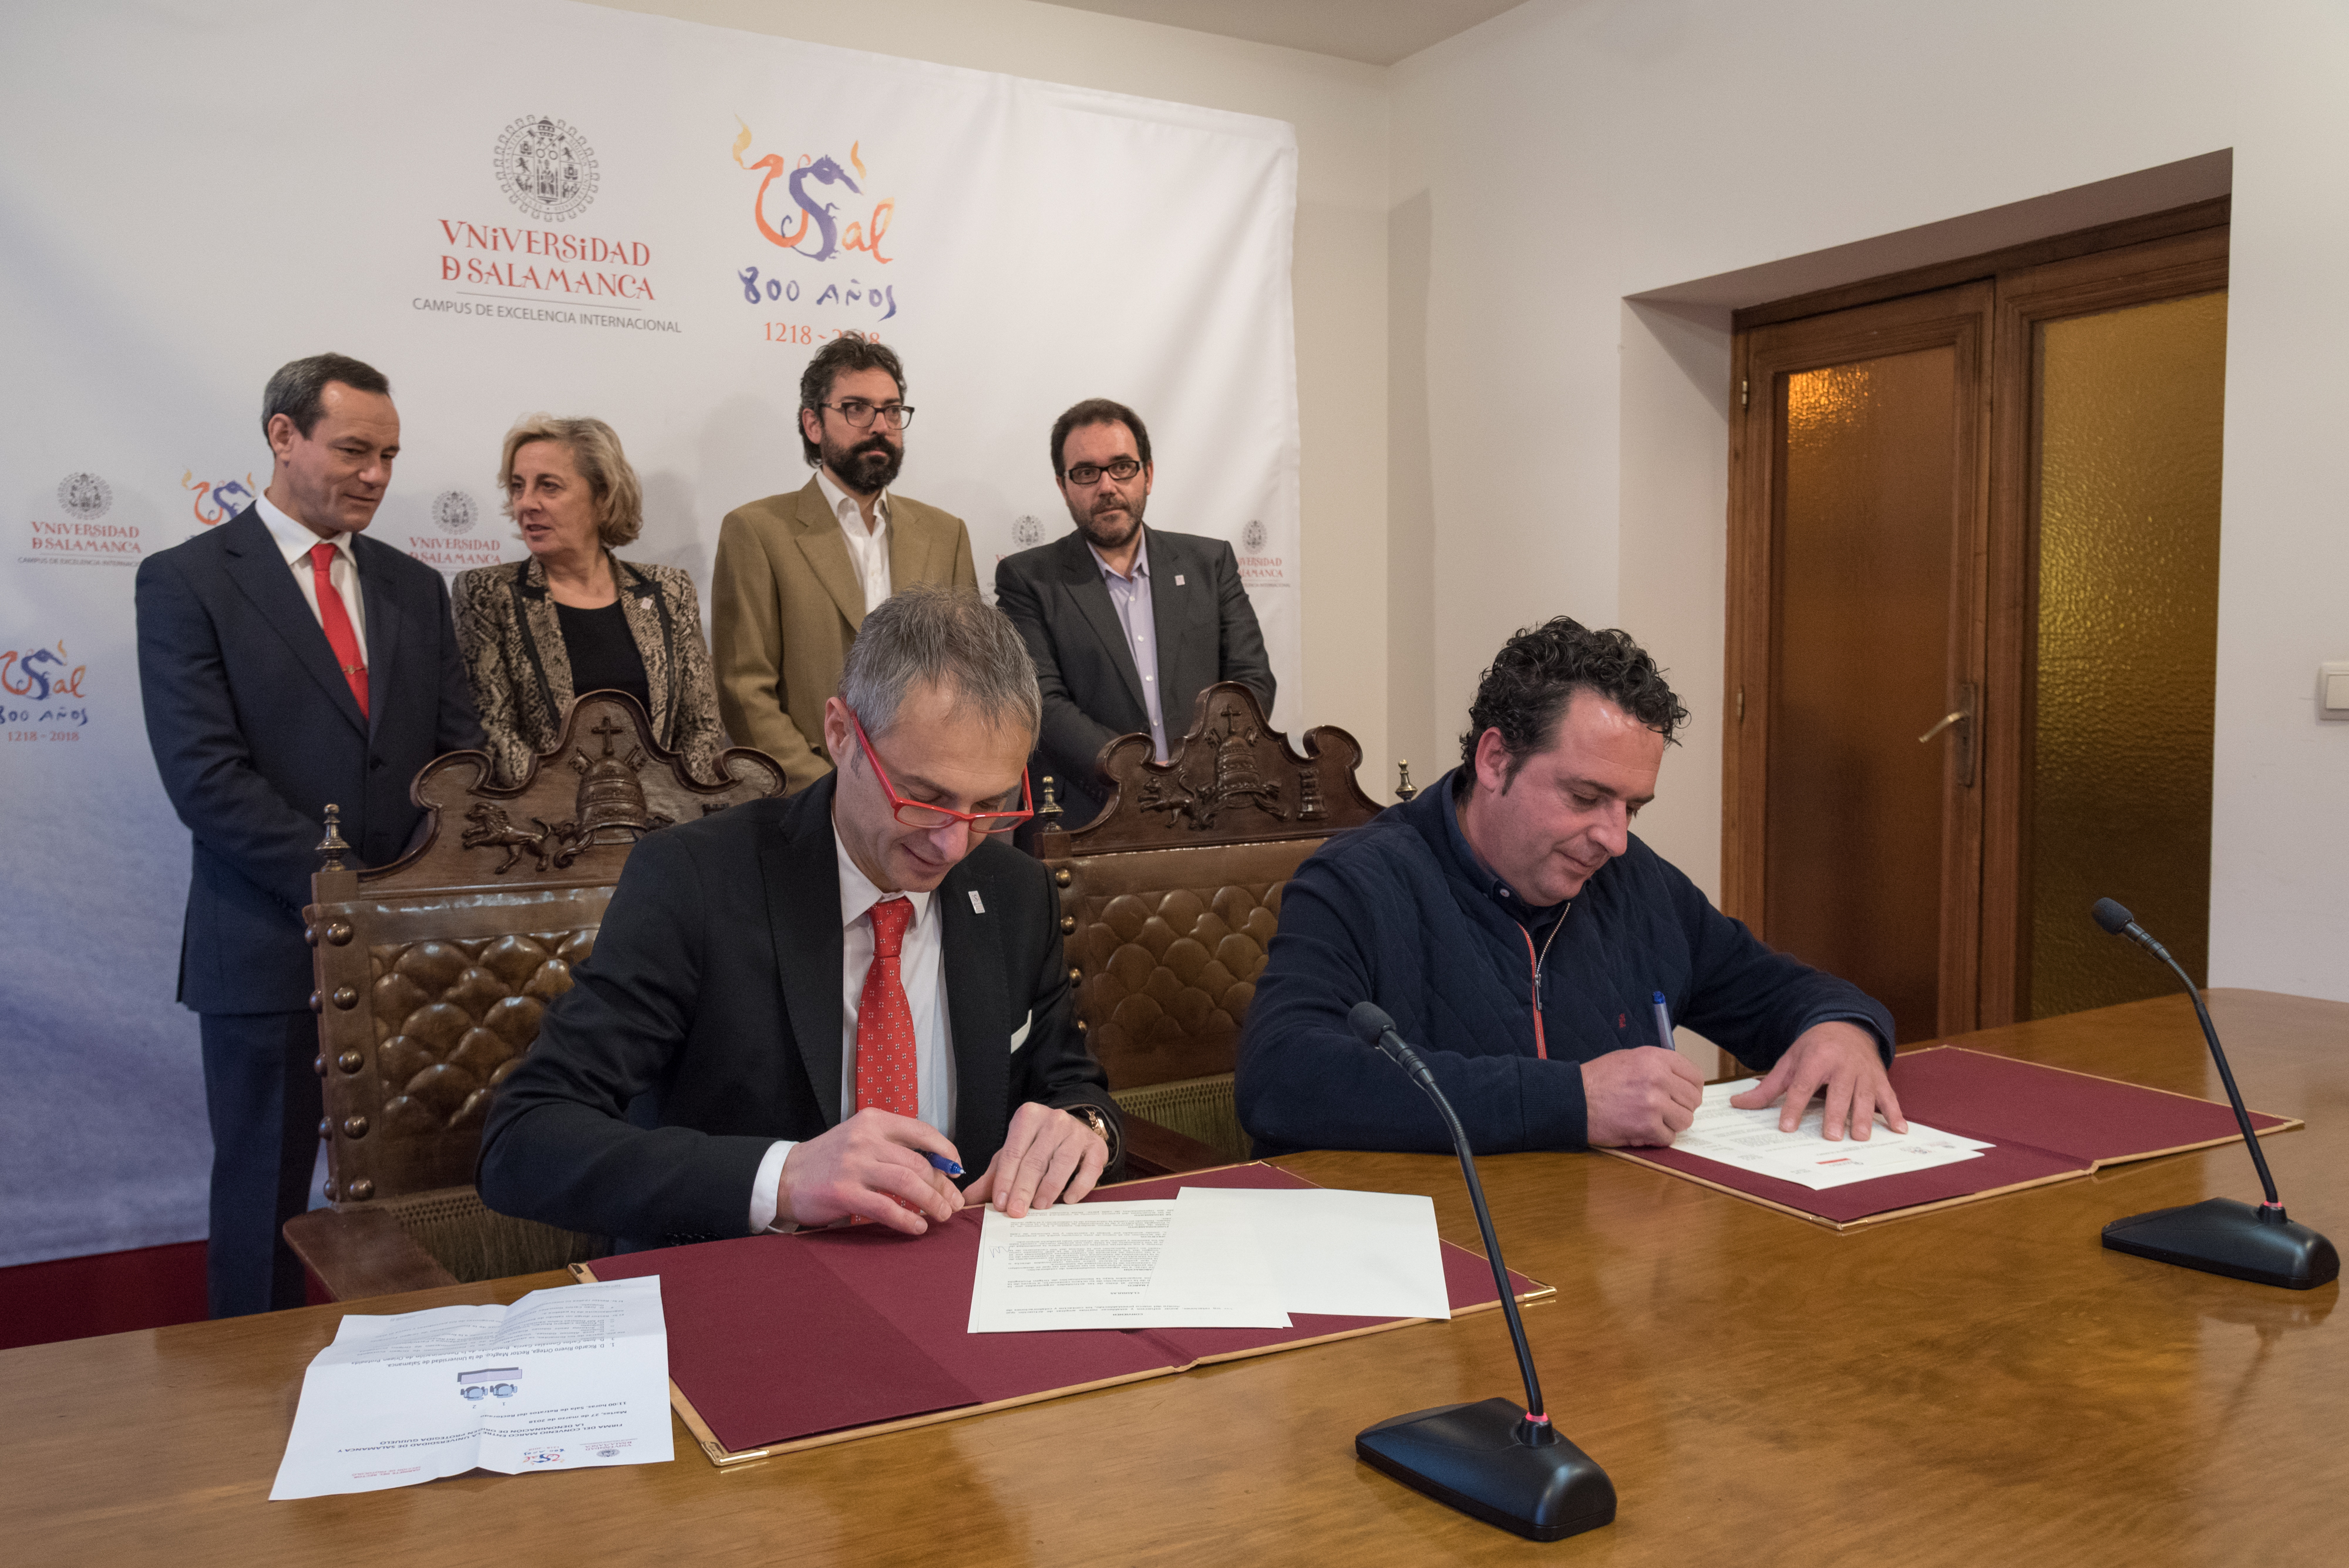 La Universidad de Salamanca y el Consejo Regulador de la D.O.P. Guijuelo rubrican un protocolo de colaboración en el marco del VIII Centenario